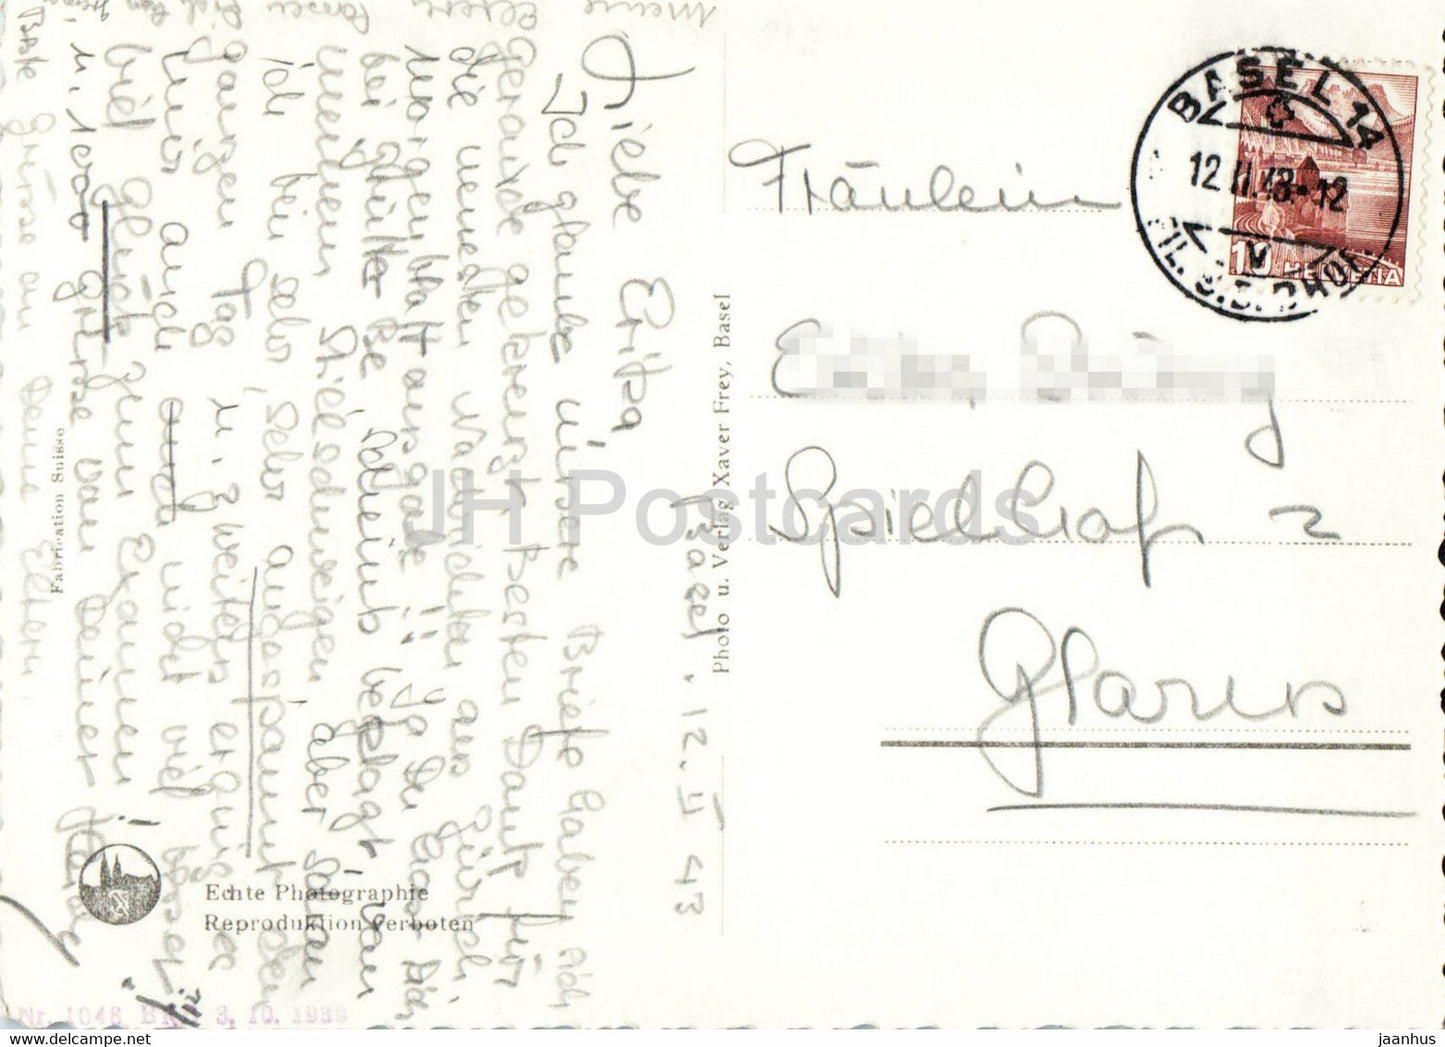 Bâle - Die drei Rheinbrucken und Munsterturm - cathédrale - 547 - carte postale ancienne - 1943 - Suisse - utilisé